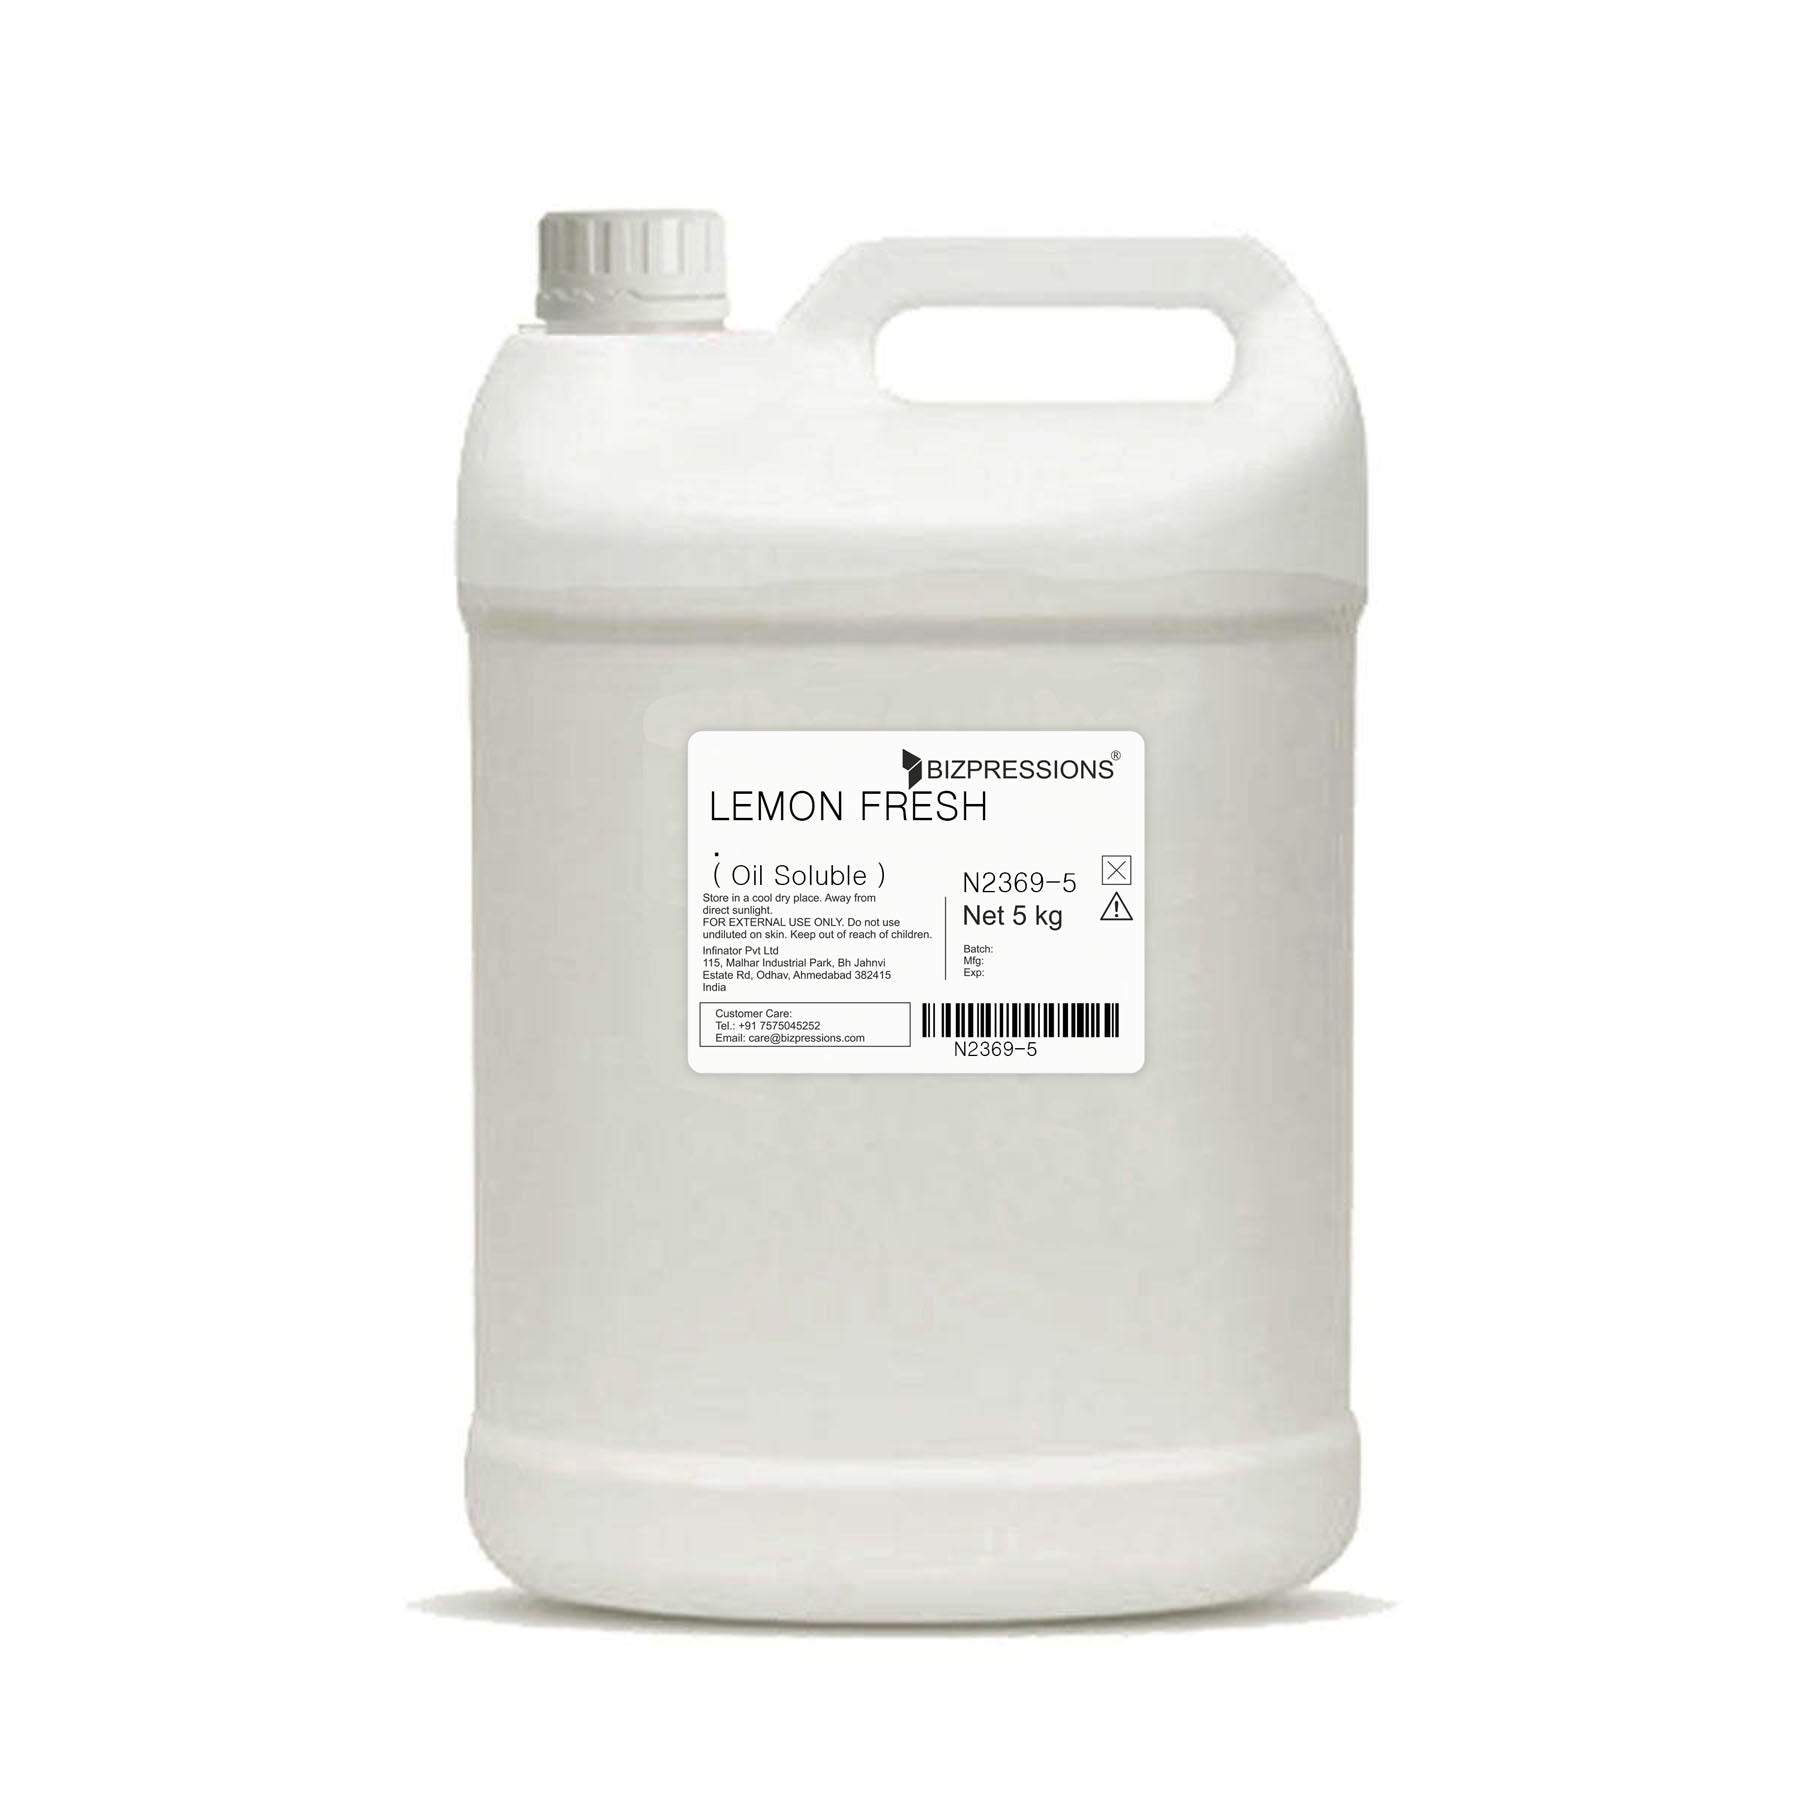 LEMON FRESH - Fragrance ( Oil Soluble ) - 5 kg